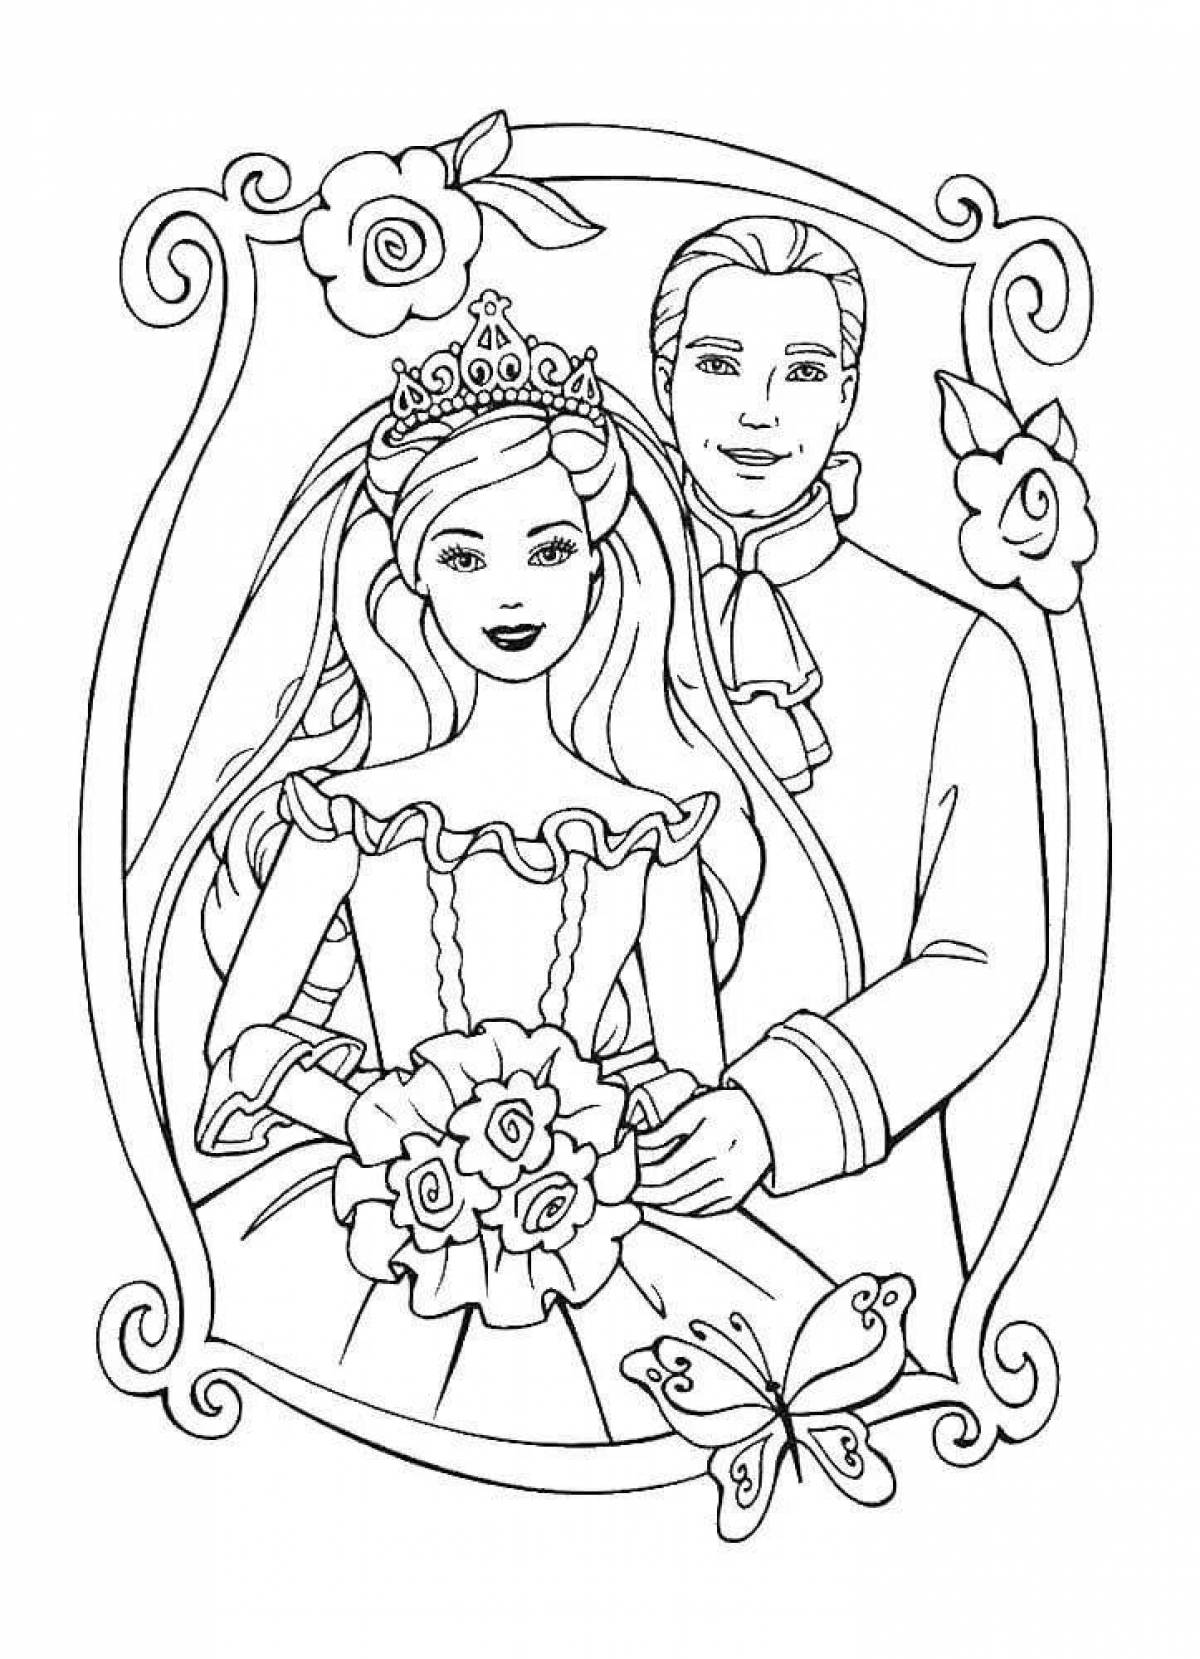 Joyful bride coloring page